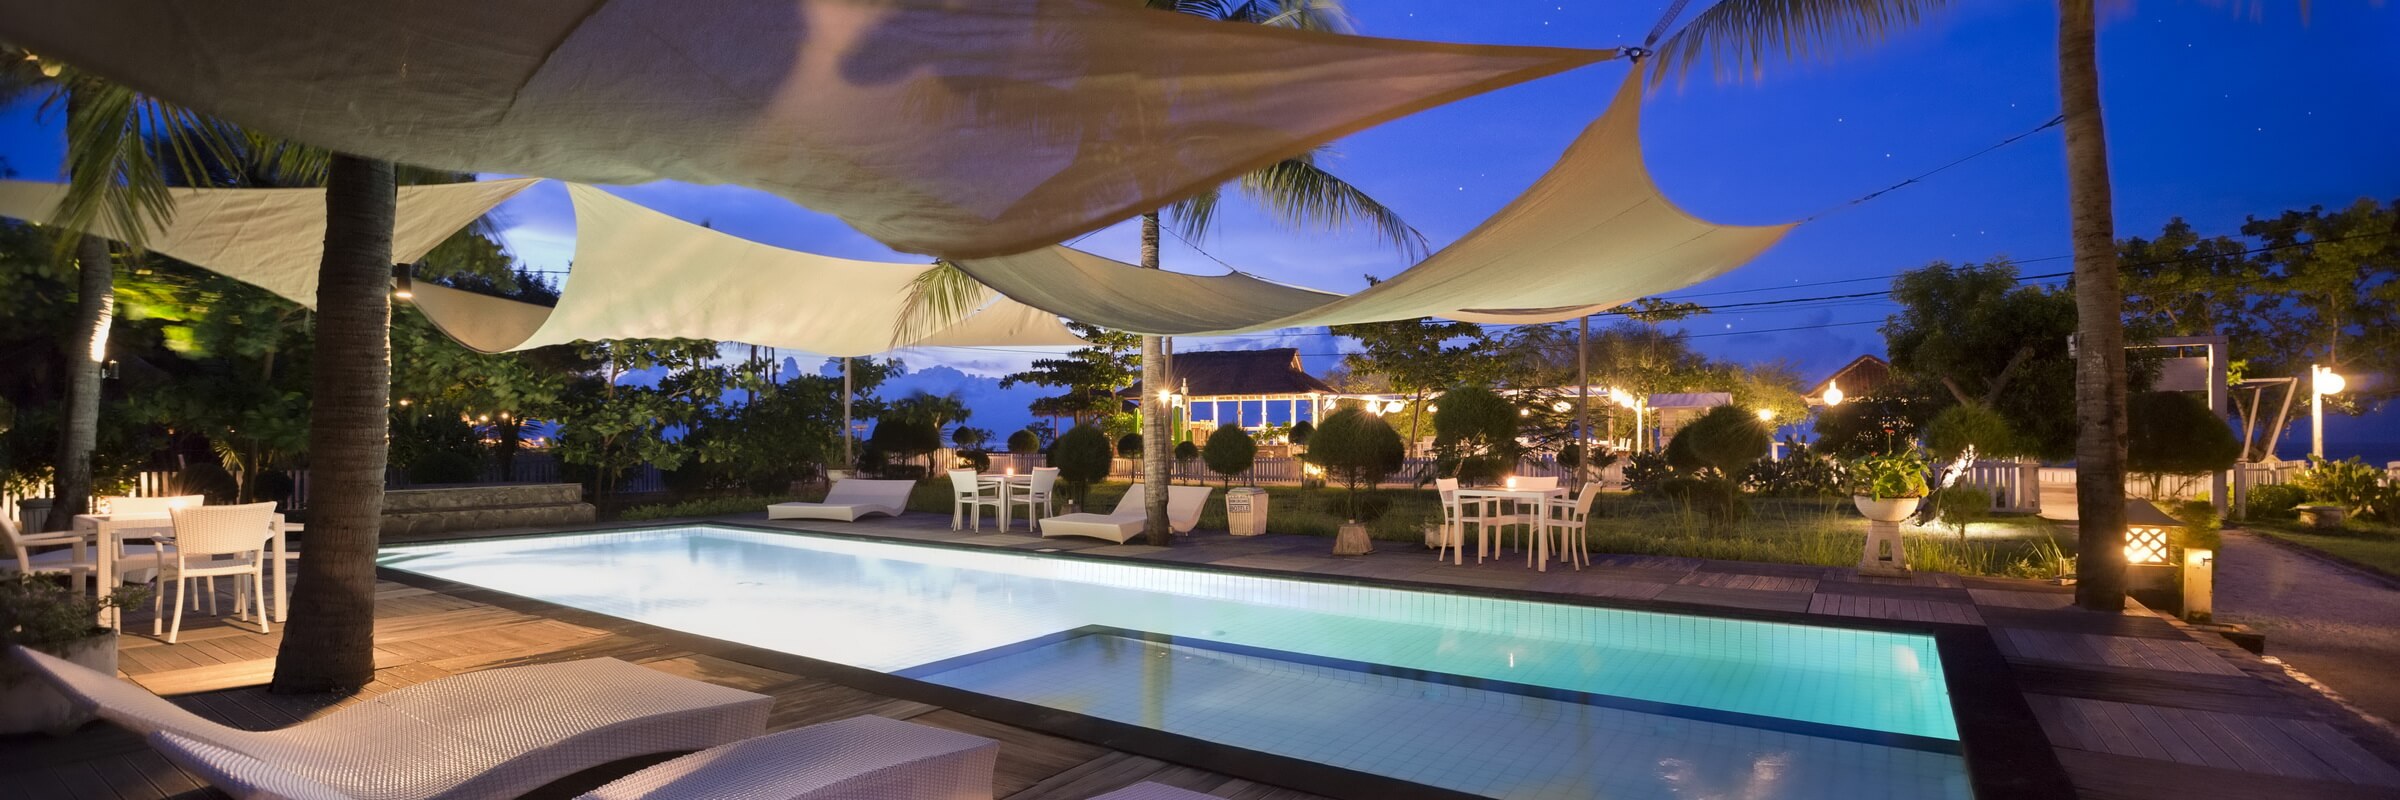 Das Gili Eco Villas verfügt über einen schönen Swimmingpool und zahlreiche Sonnenliegen, die zum Baden und Relaxen einladen.